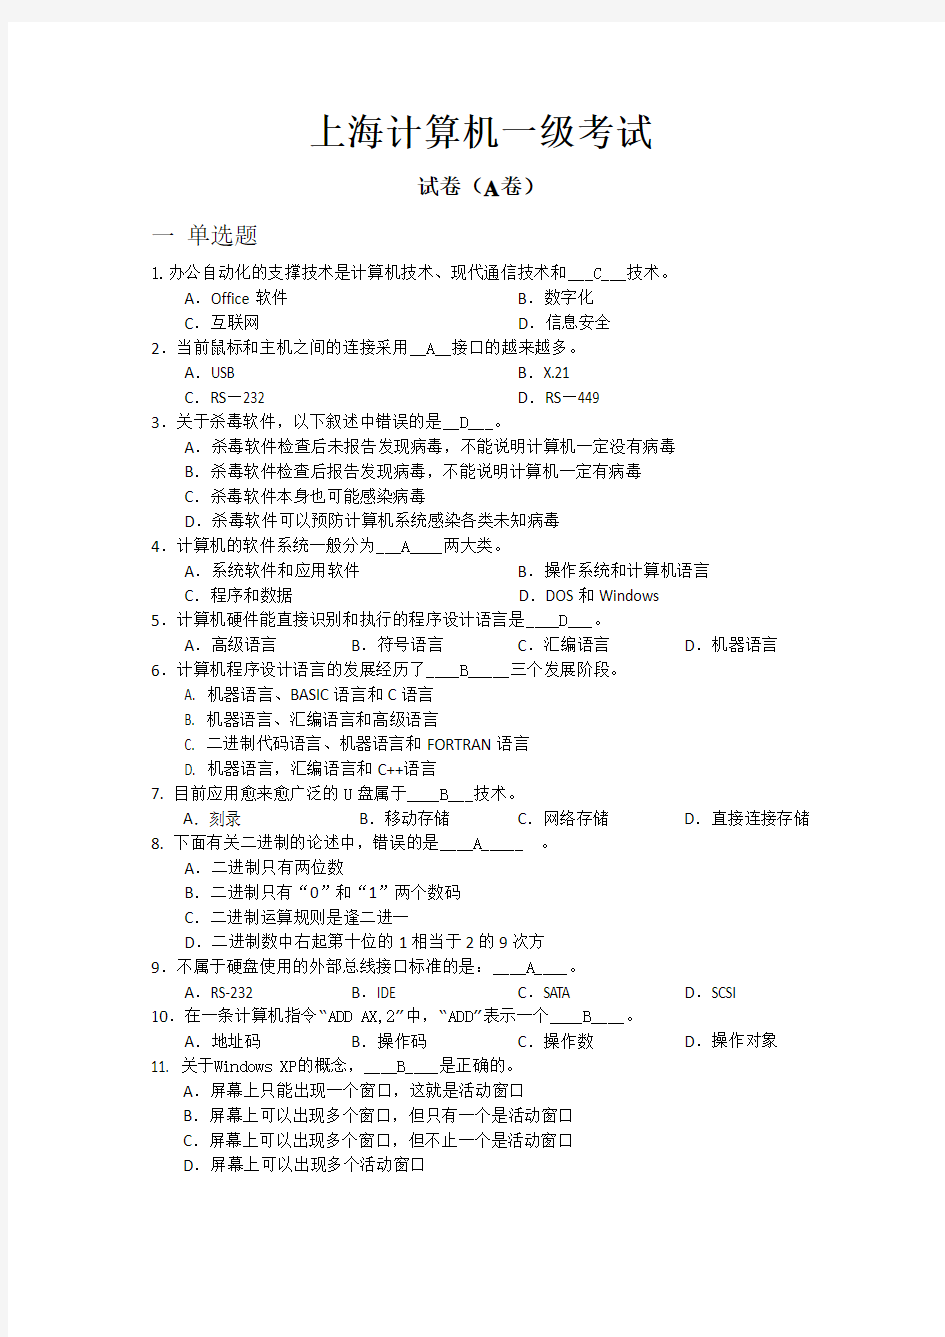 上海市计算机一级考试-(题目+答案)剖析.